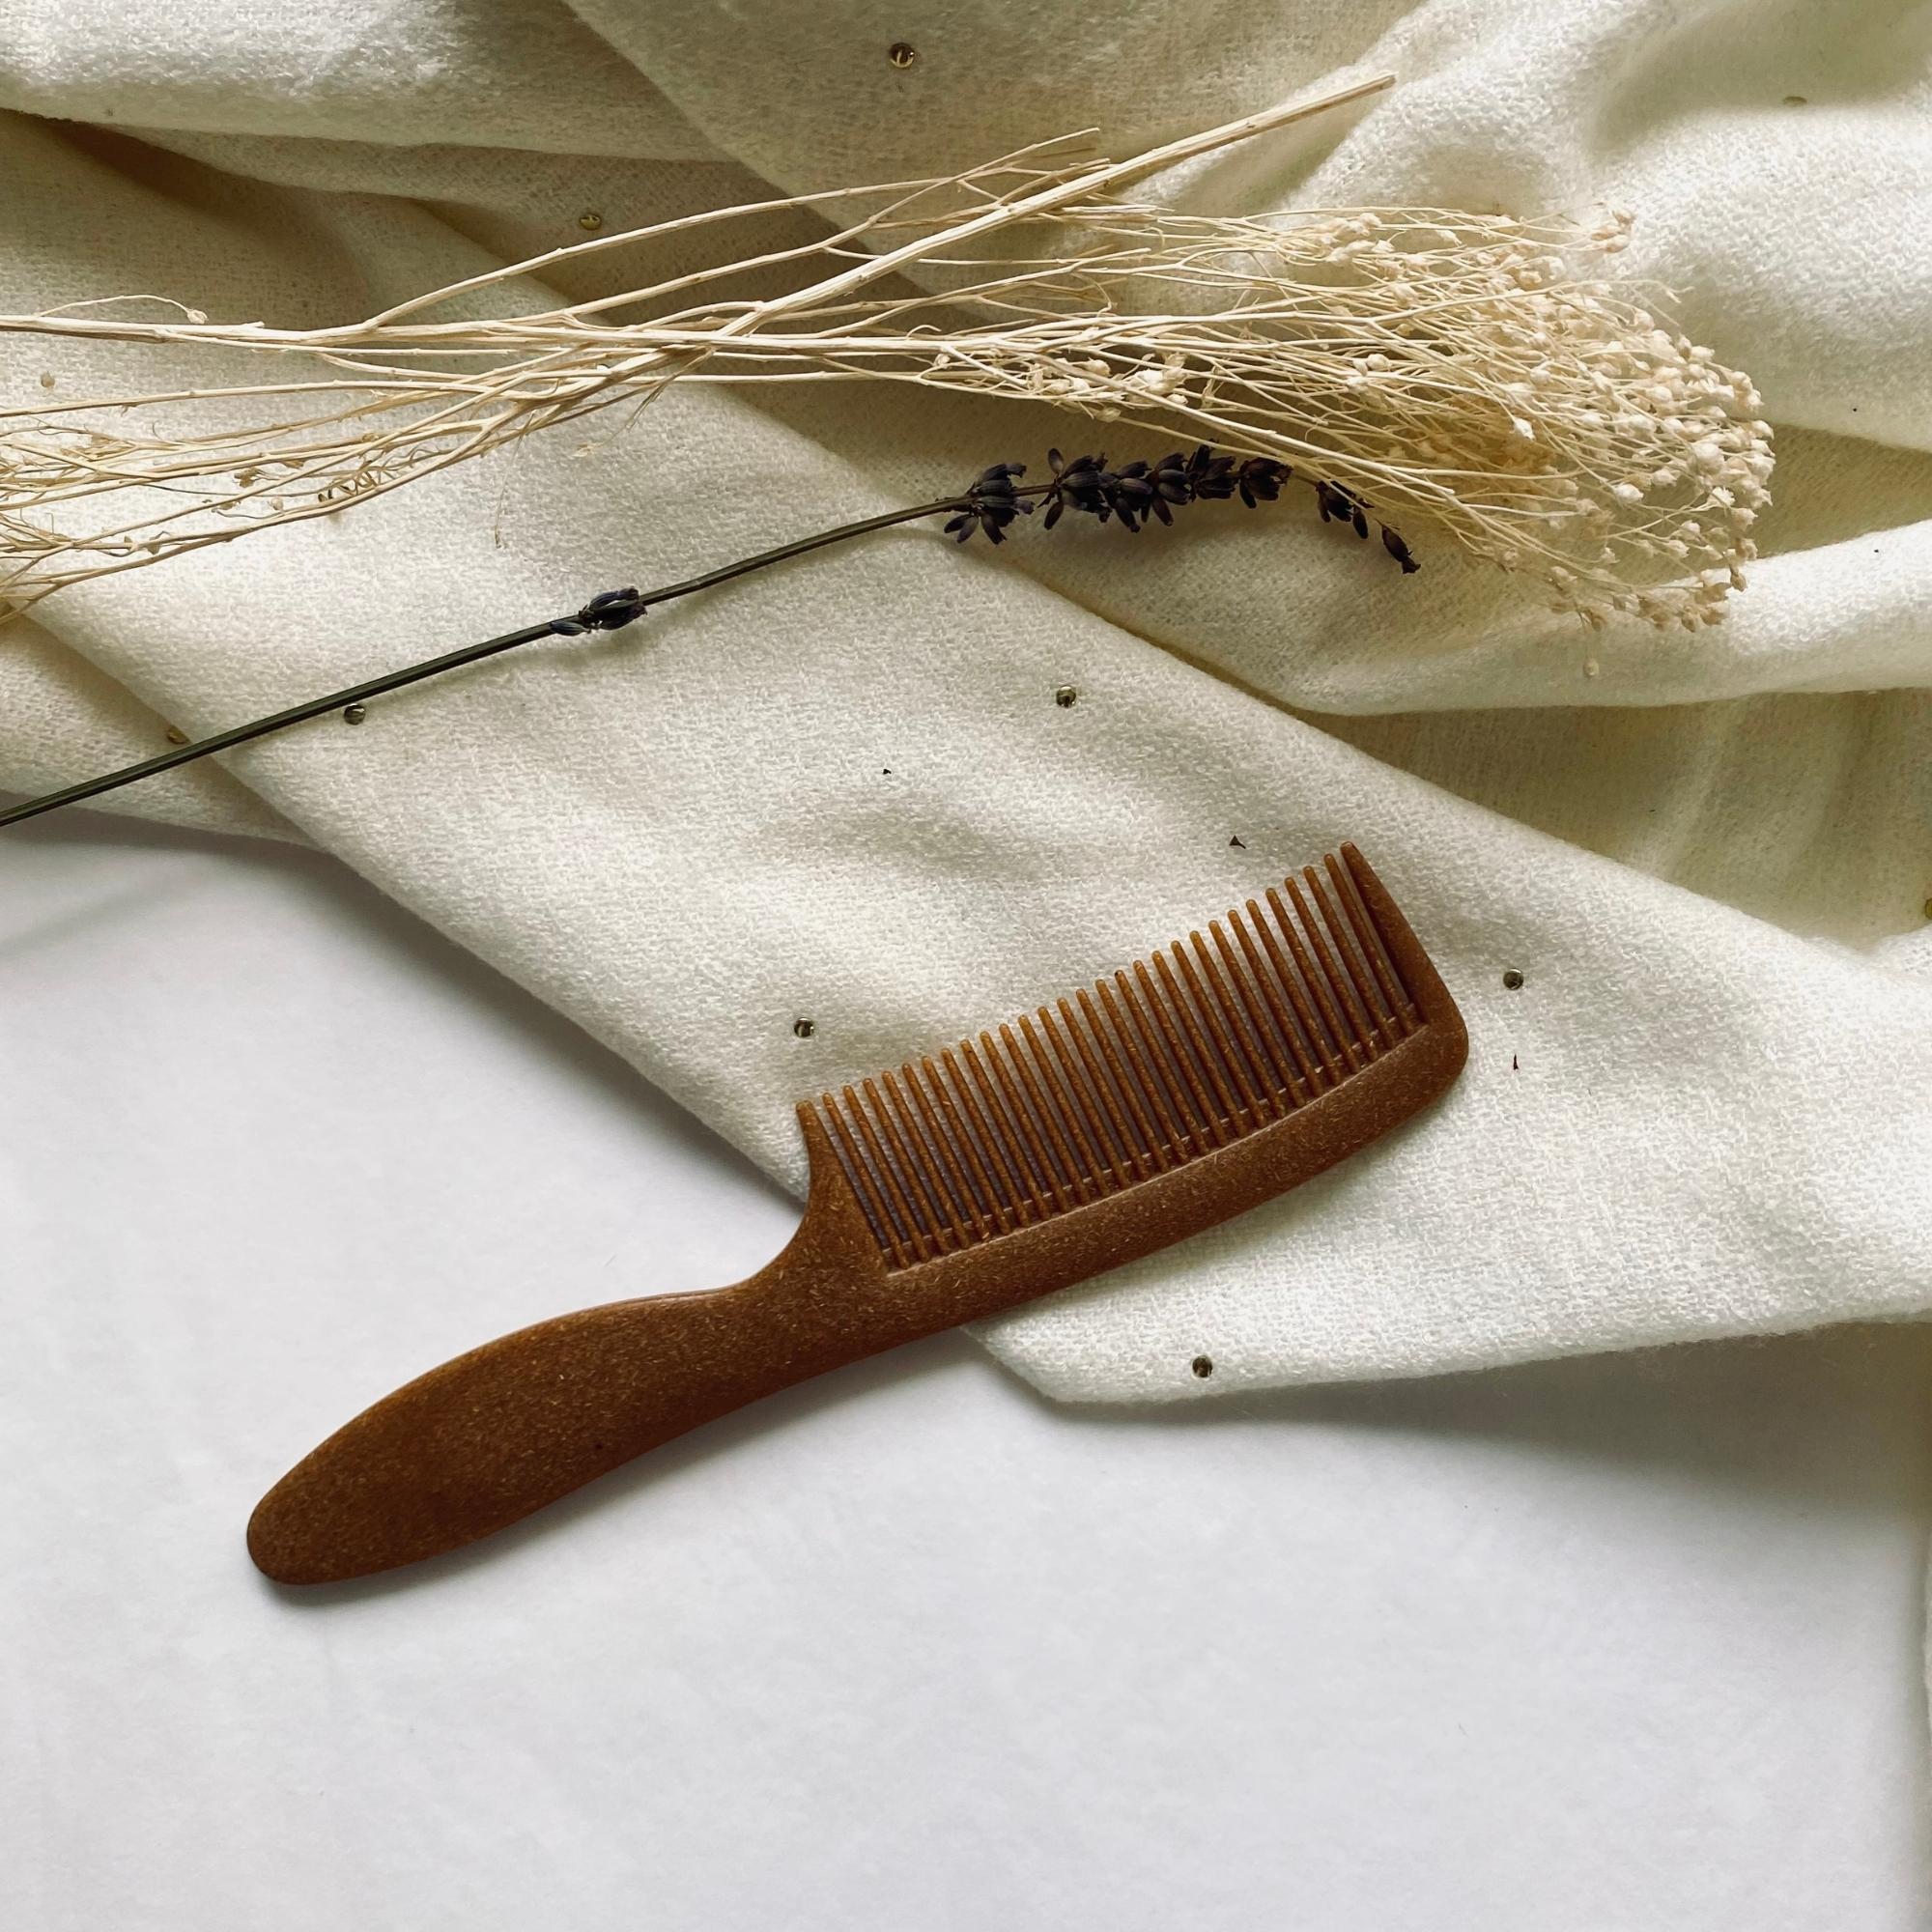 Peigne à cheveux et brosse à cheveux made in France